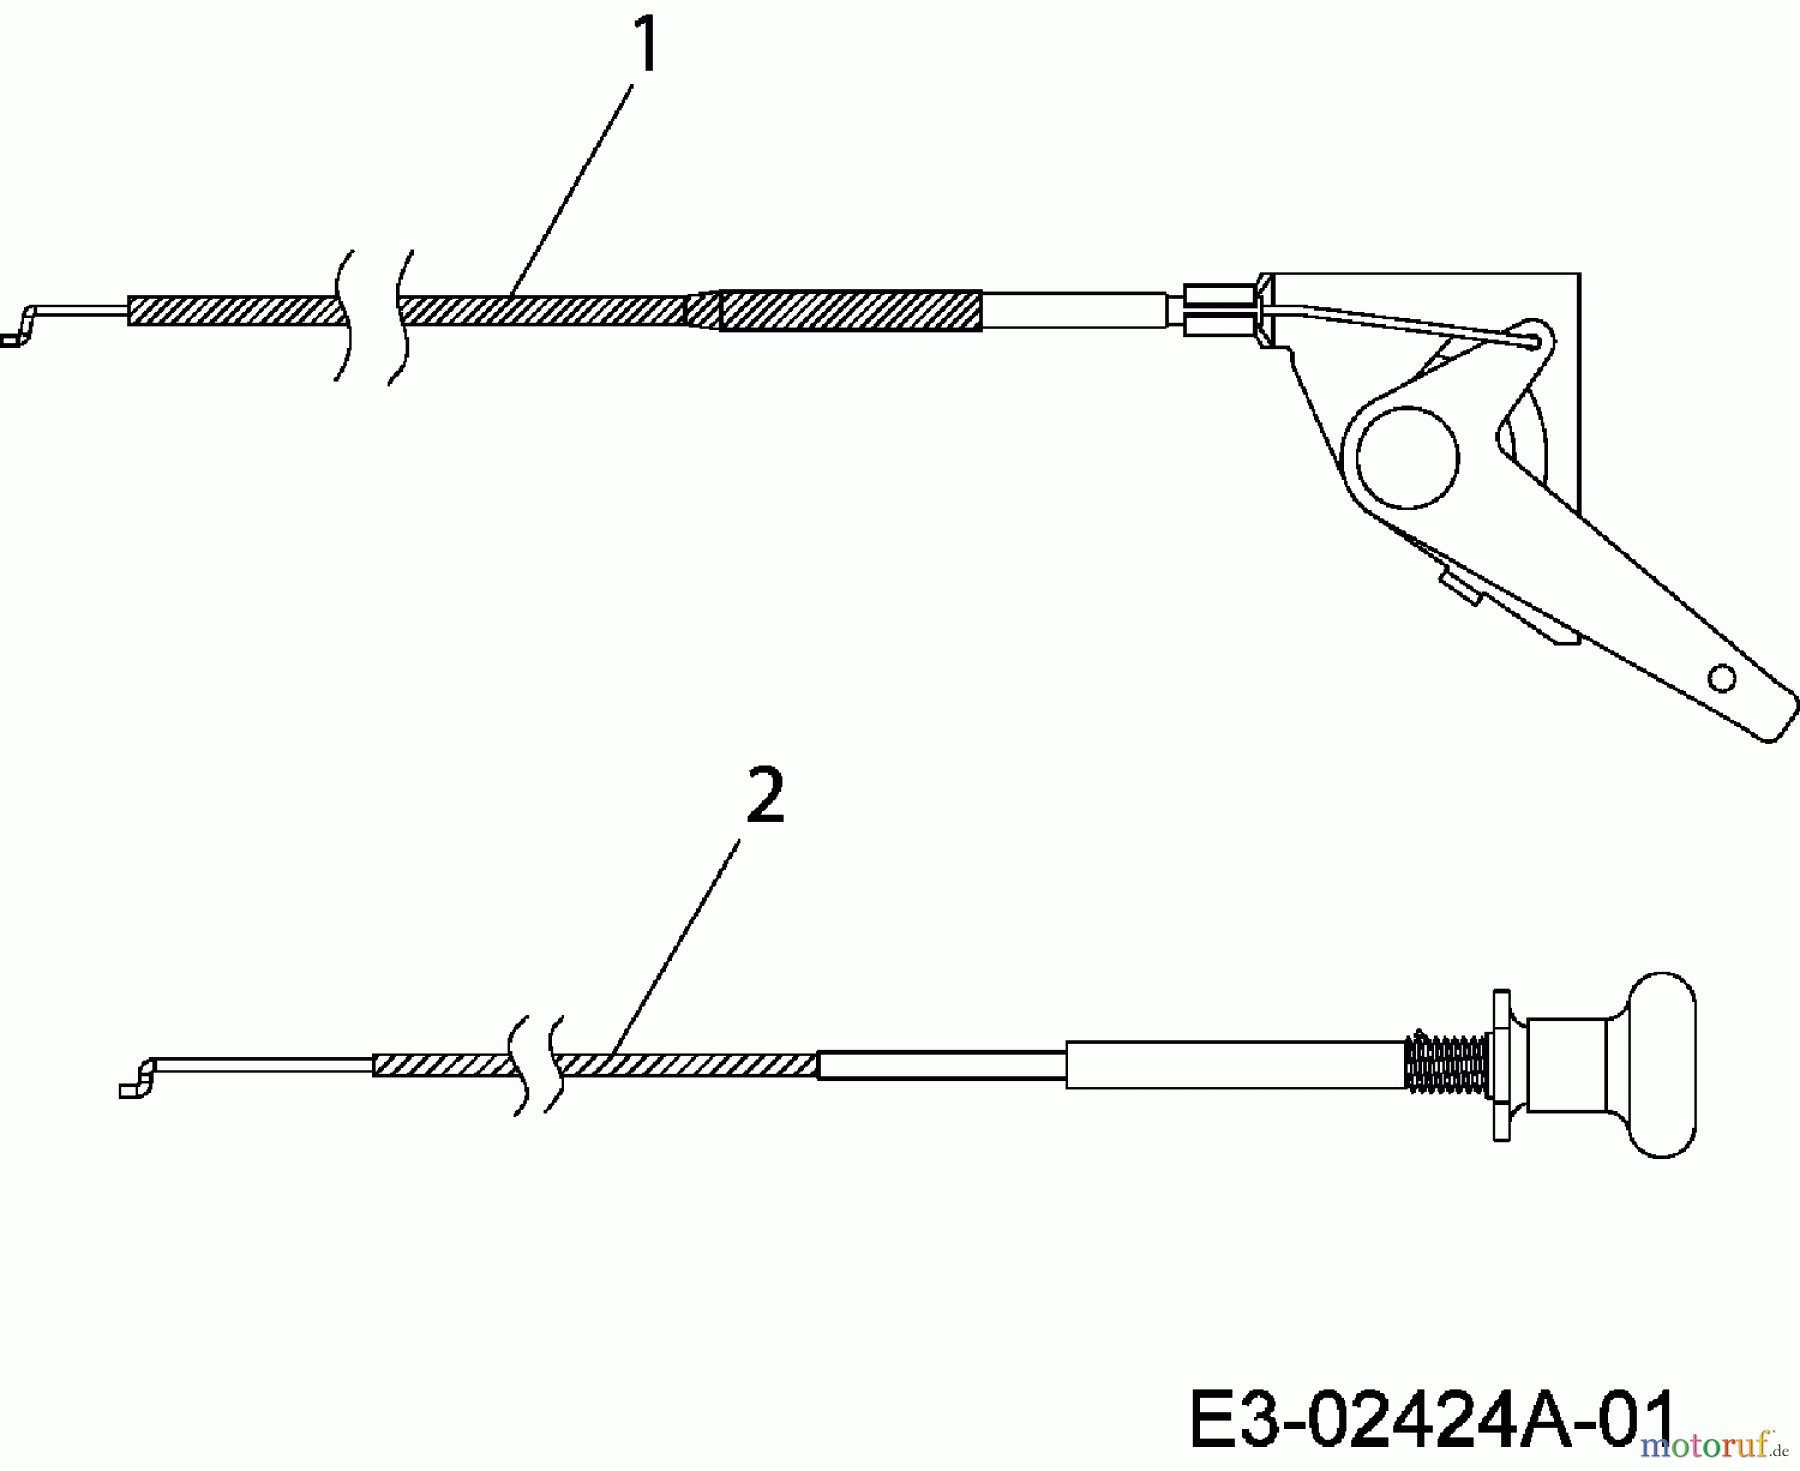  MTD Rasentraktoren 180/92 HT 13A3498E676  (2006) Choke- und Gaszug